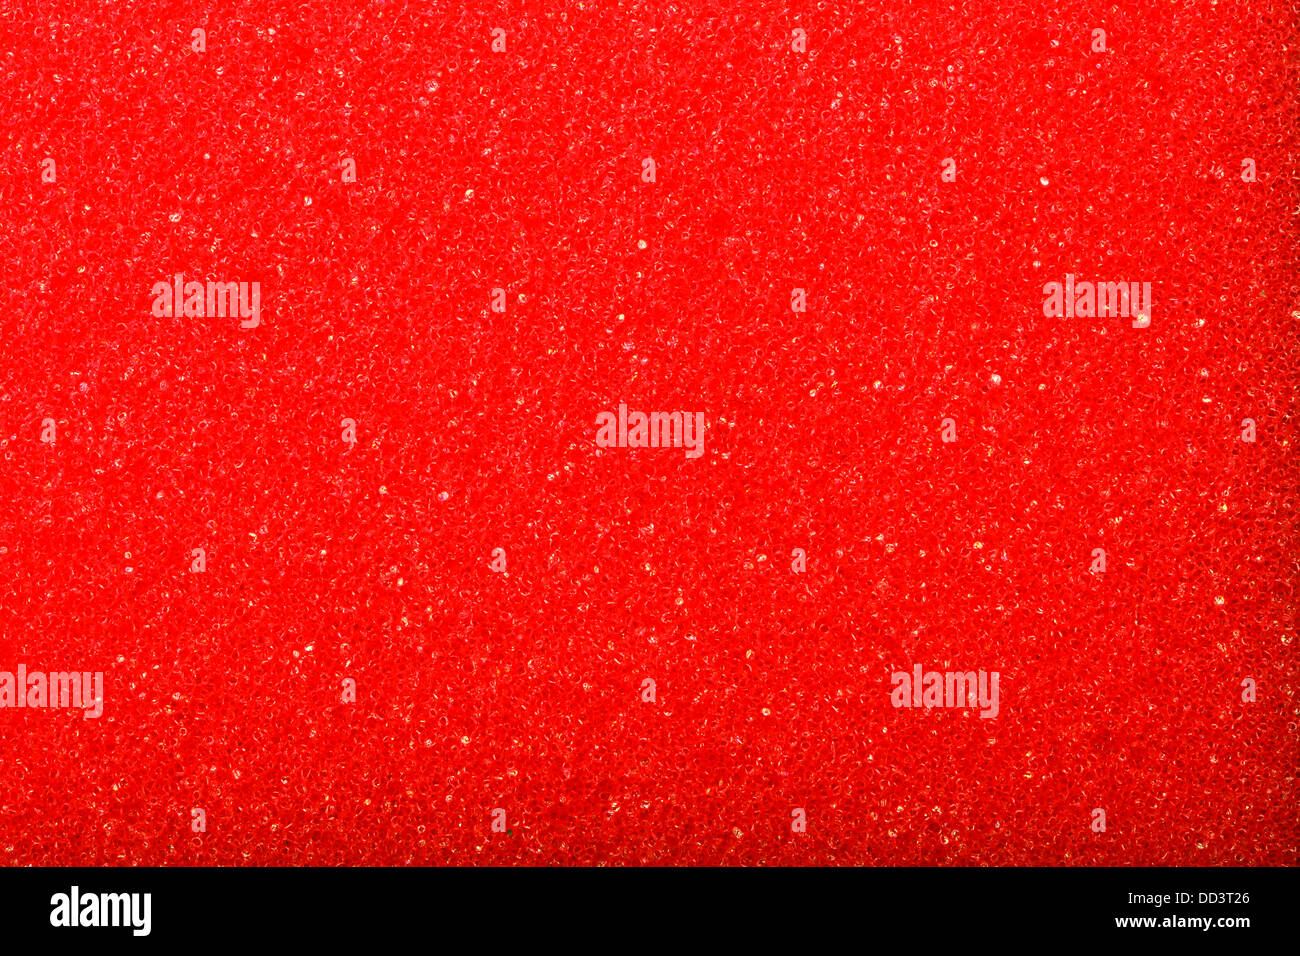 Esponja de espuma de celulosa textura roja - fondo. Foto de stock